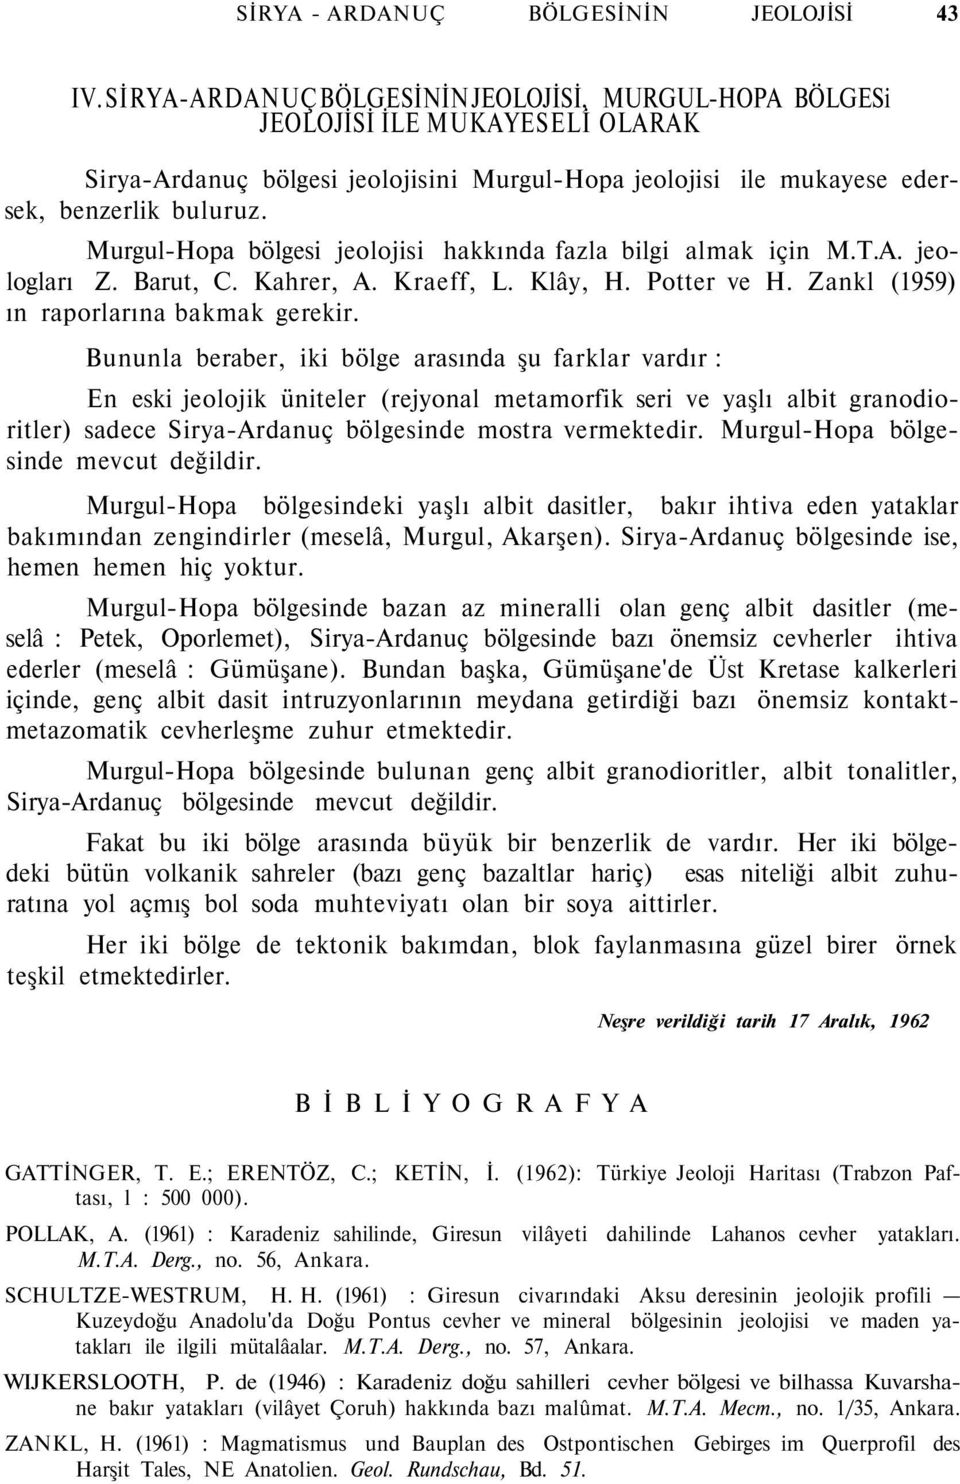 Murgul-Hopa bölgesi jeolojisi hakkında fazla bilgi almak için M.T.A. jeologları Z. Barut, C. Kahrer, A. Kraeff, L. Klây, H. Potter ve H. Zankl (1959) ın raporlarına bakmak gerekir.